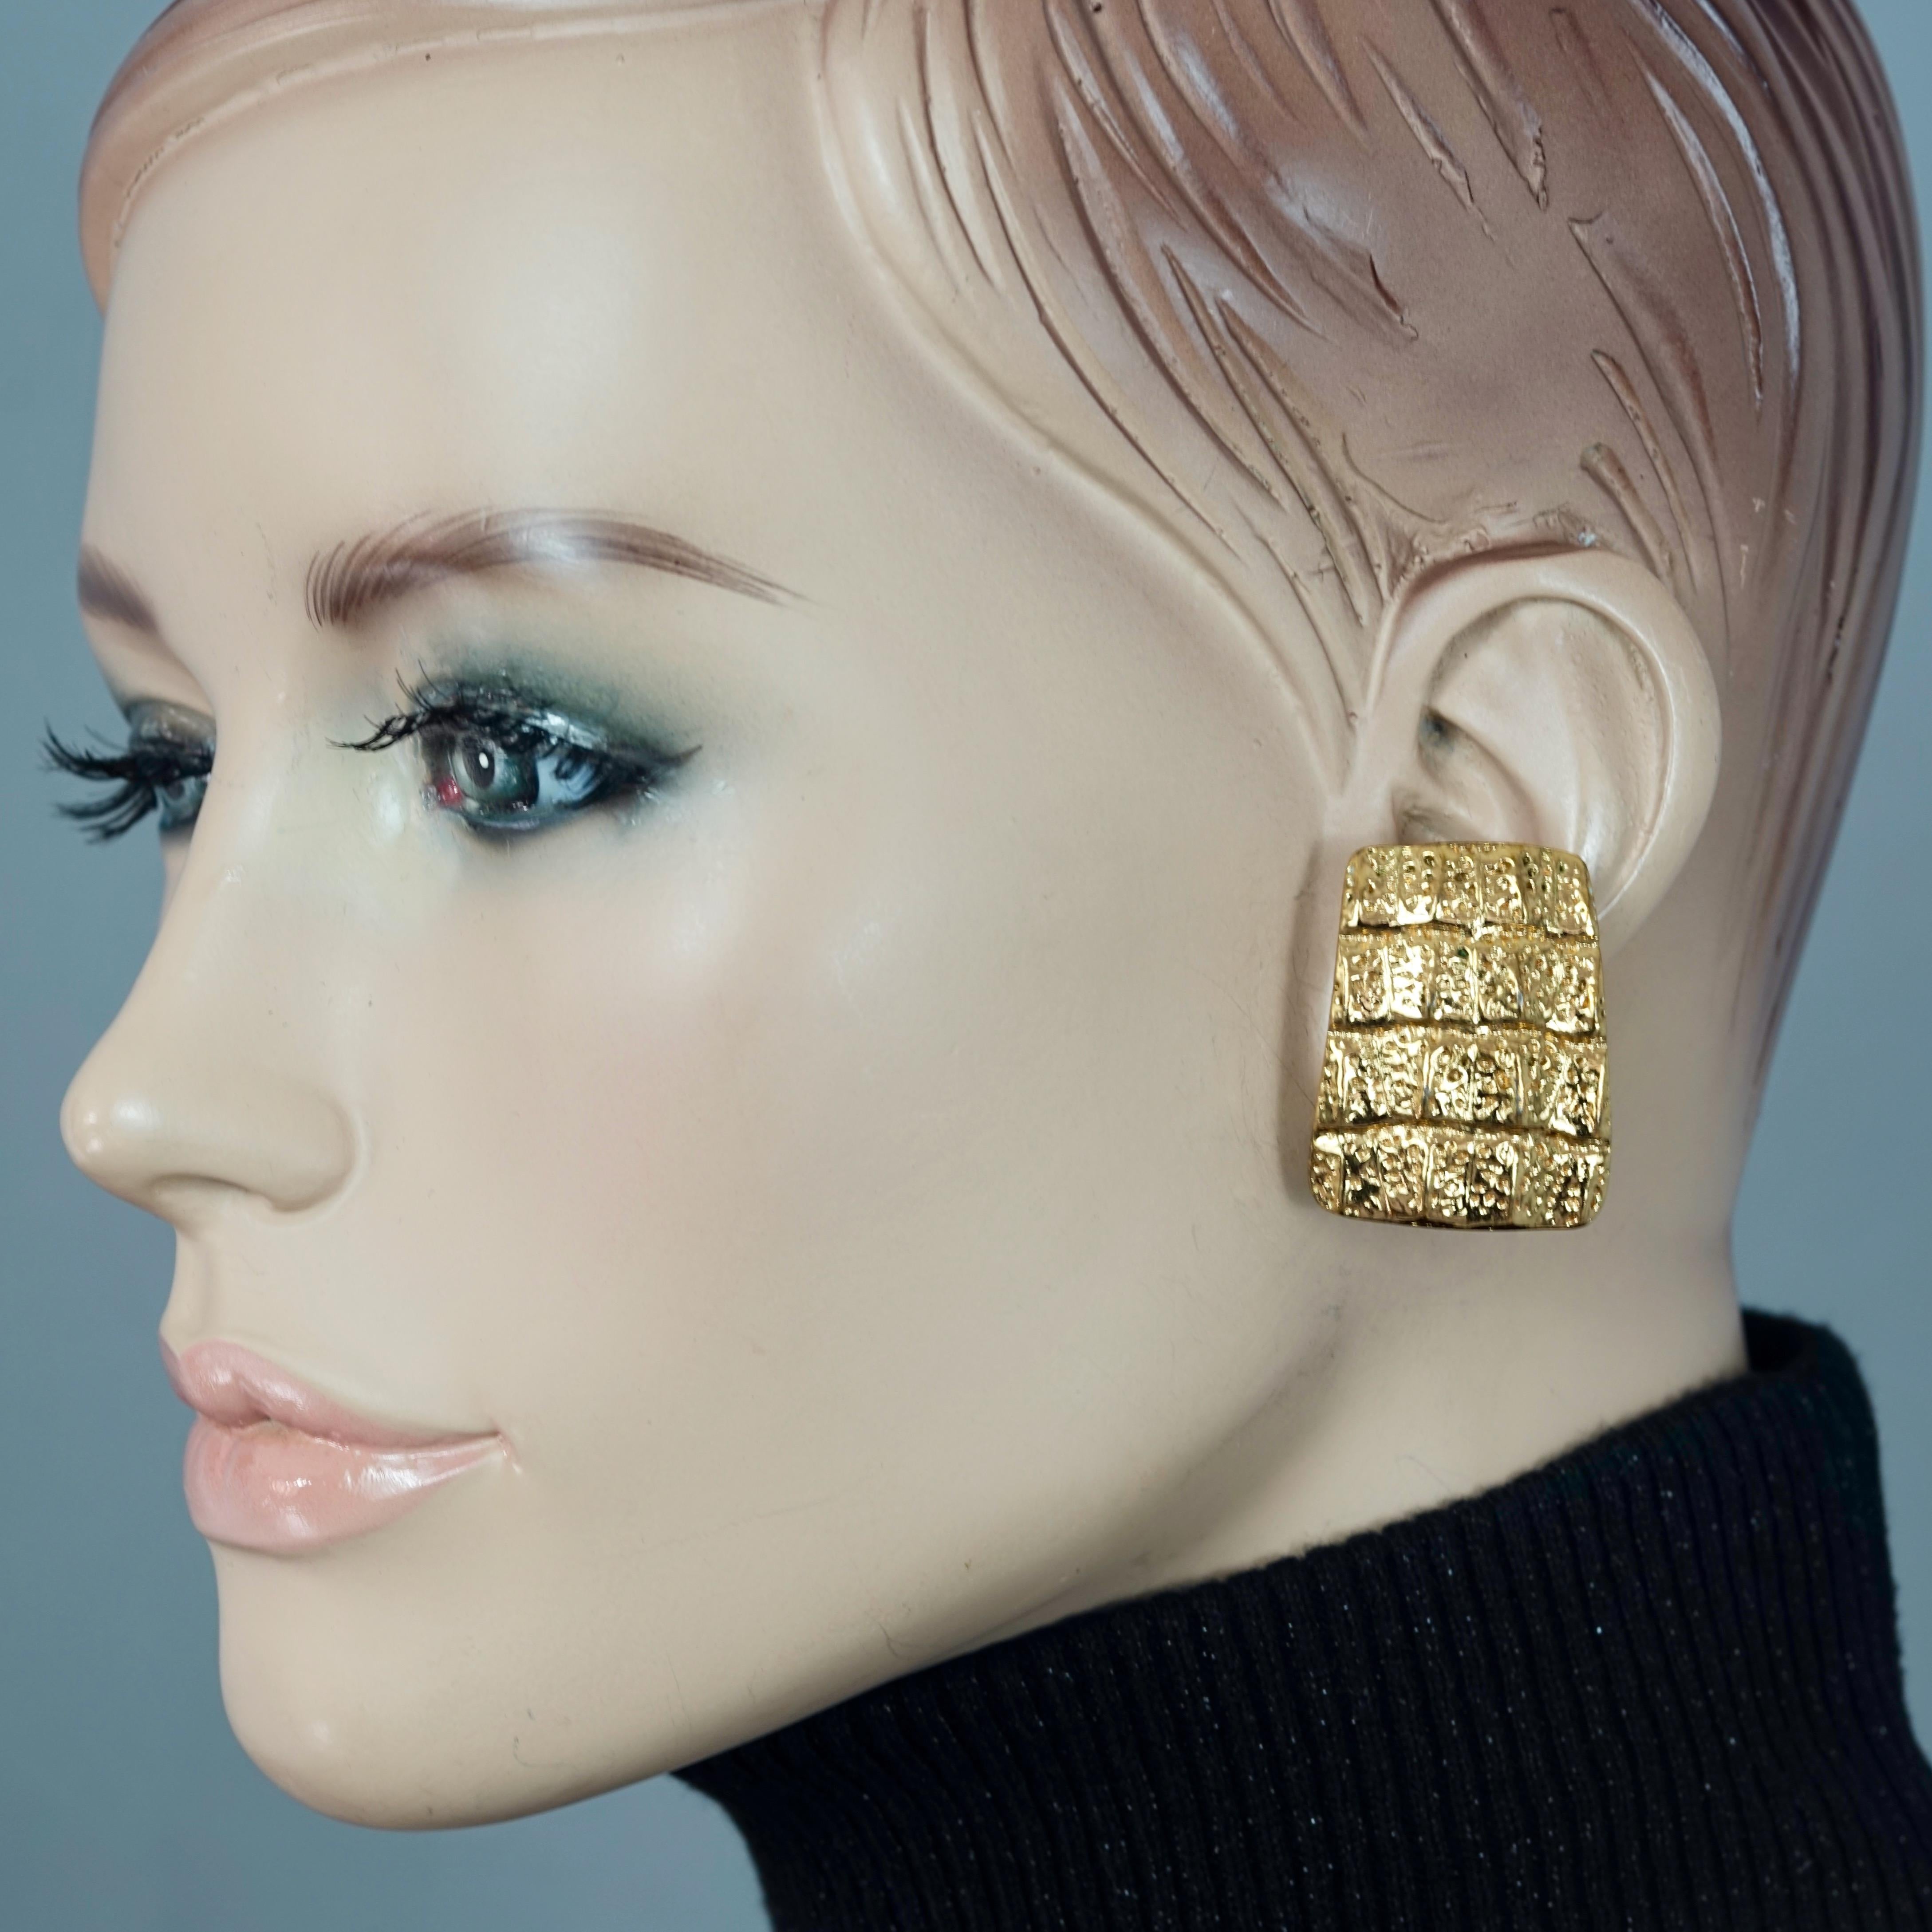 Vintage YVES SAINT LAURENT Ysl Croco Embossed Earrings

As seen on Penelope Cruz in the movie 